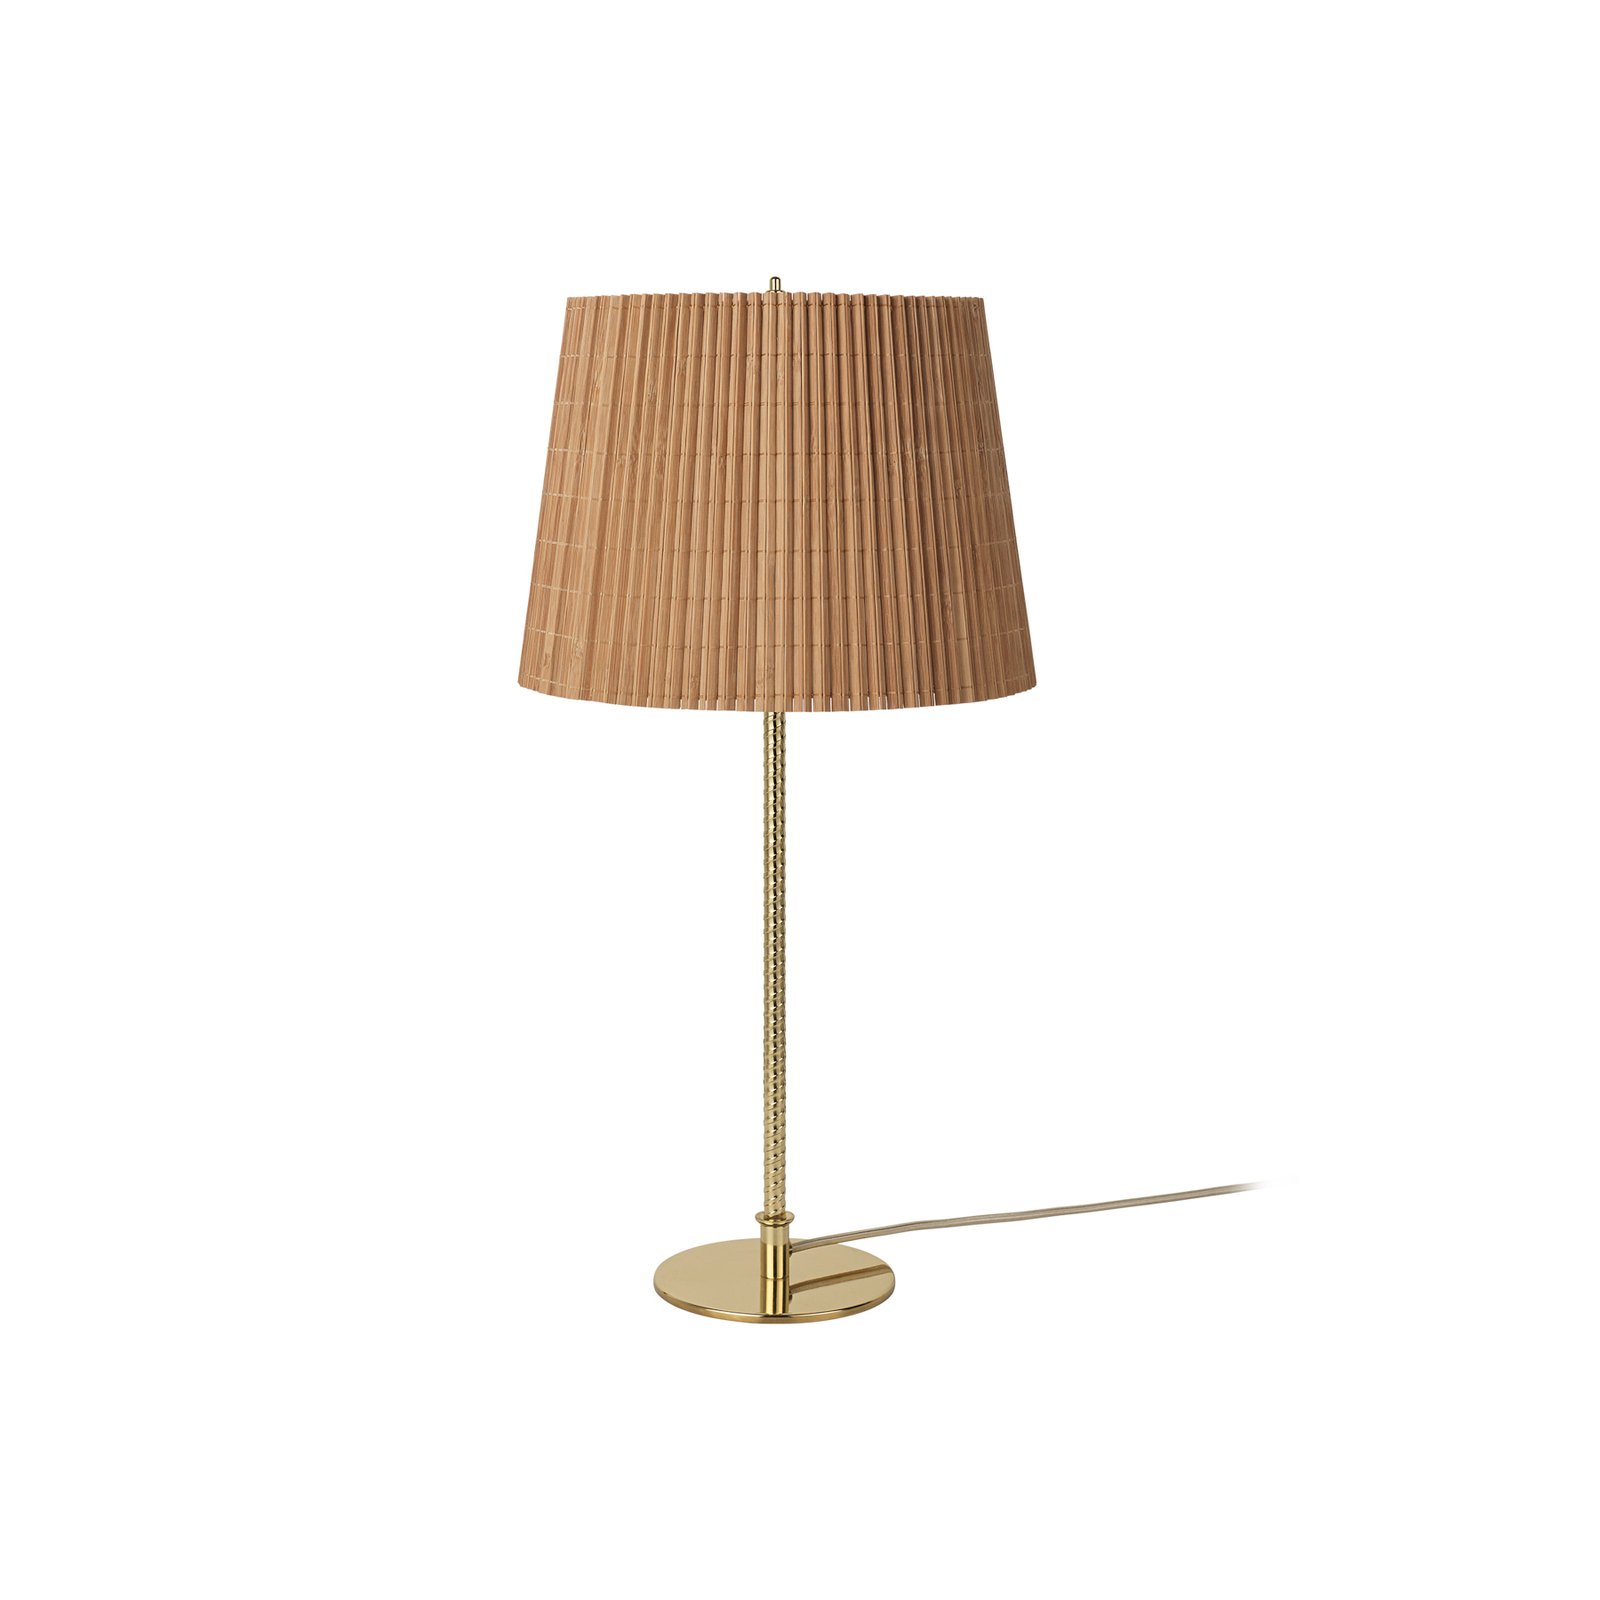 Lampa stołowa Gubi 9205, mosiądz, klosz bambus, wysokość 58 cm